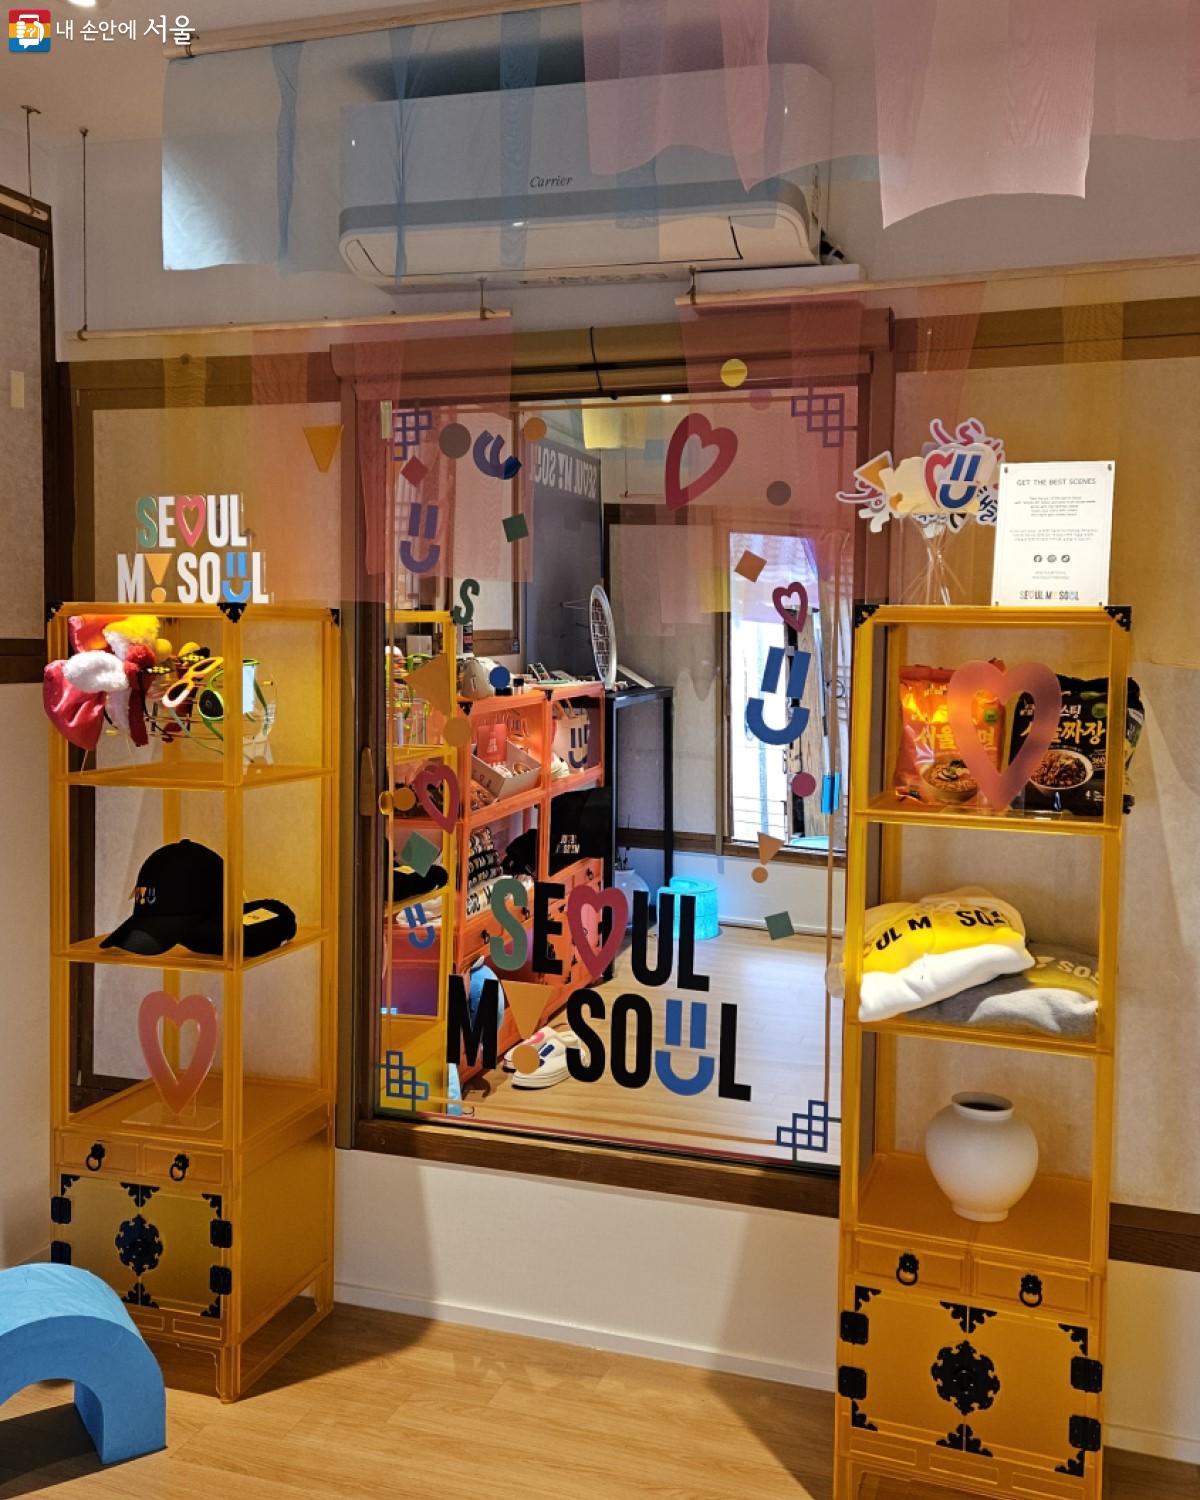 인증샷용 전신 거울과 머리띠, 선글라스, 서울시를 상징하는 글과 픽토그램 토퍼 ⓒ송지혜